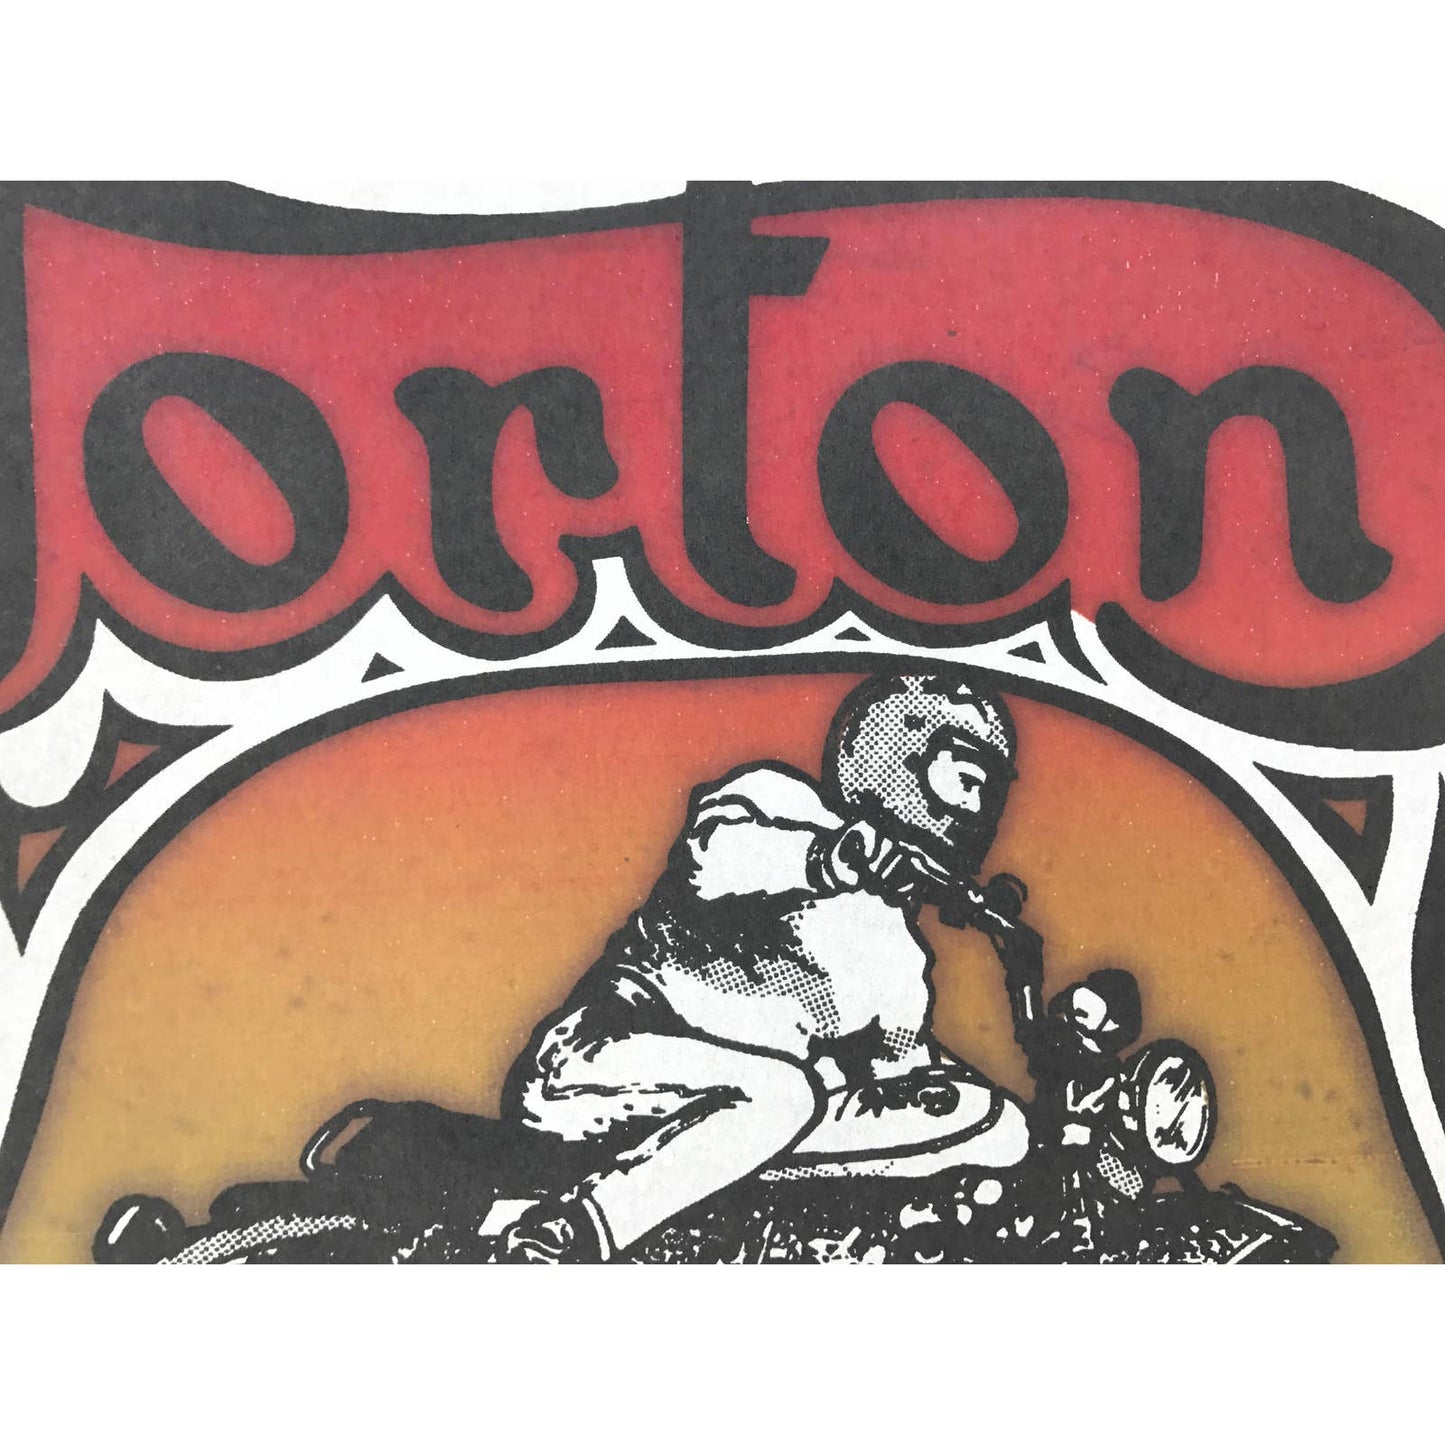 Norton Motorcycle Get It On 1973 Rat's Hole Vintage Iron On Heat Transfer